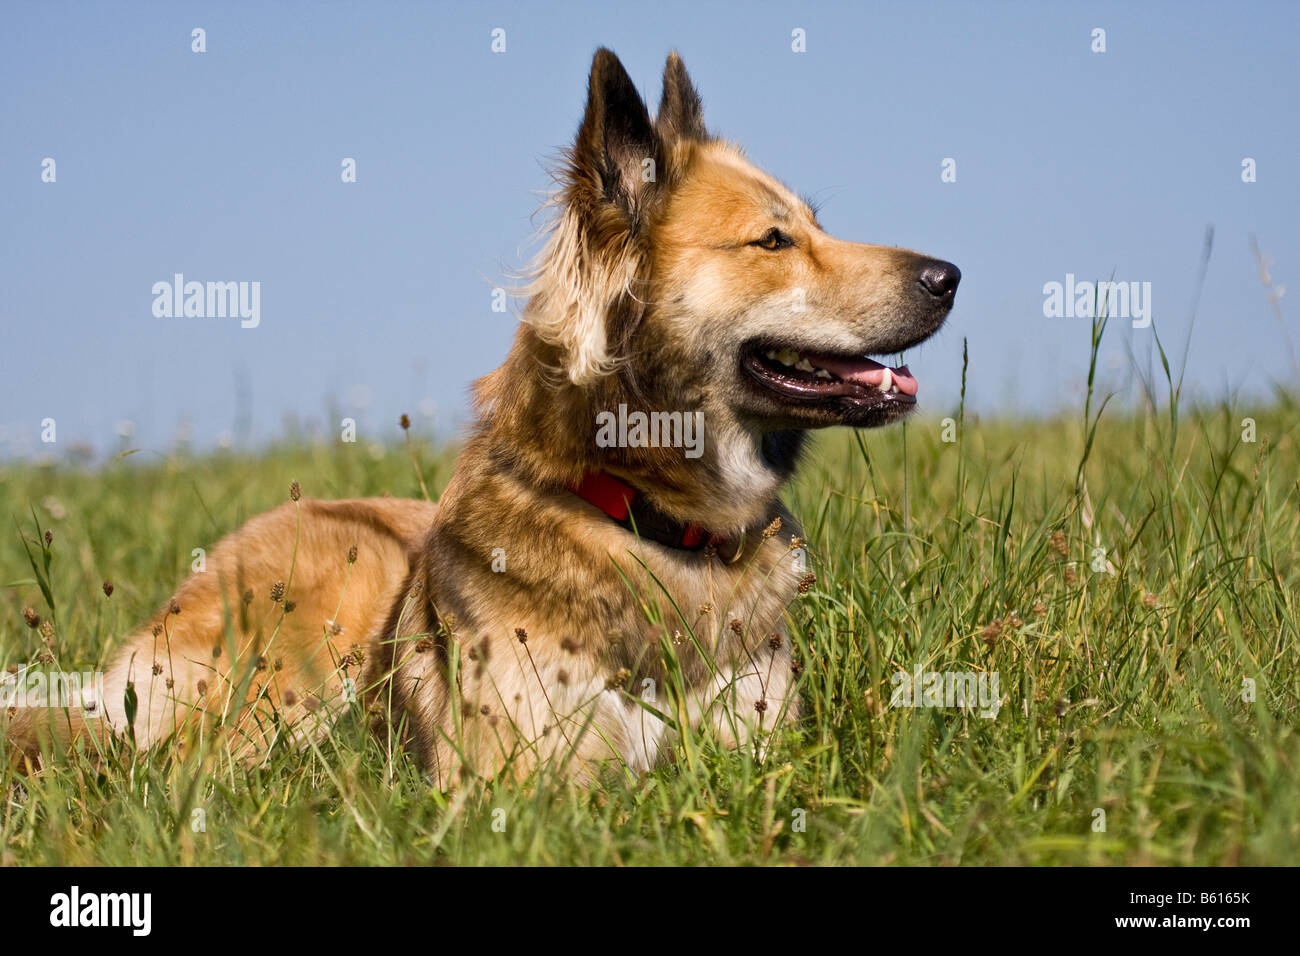 Belgischer Schäferhund Mischling auf einer Wiese liegend Stockfotografie -  Alamy